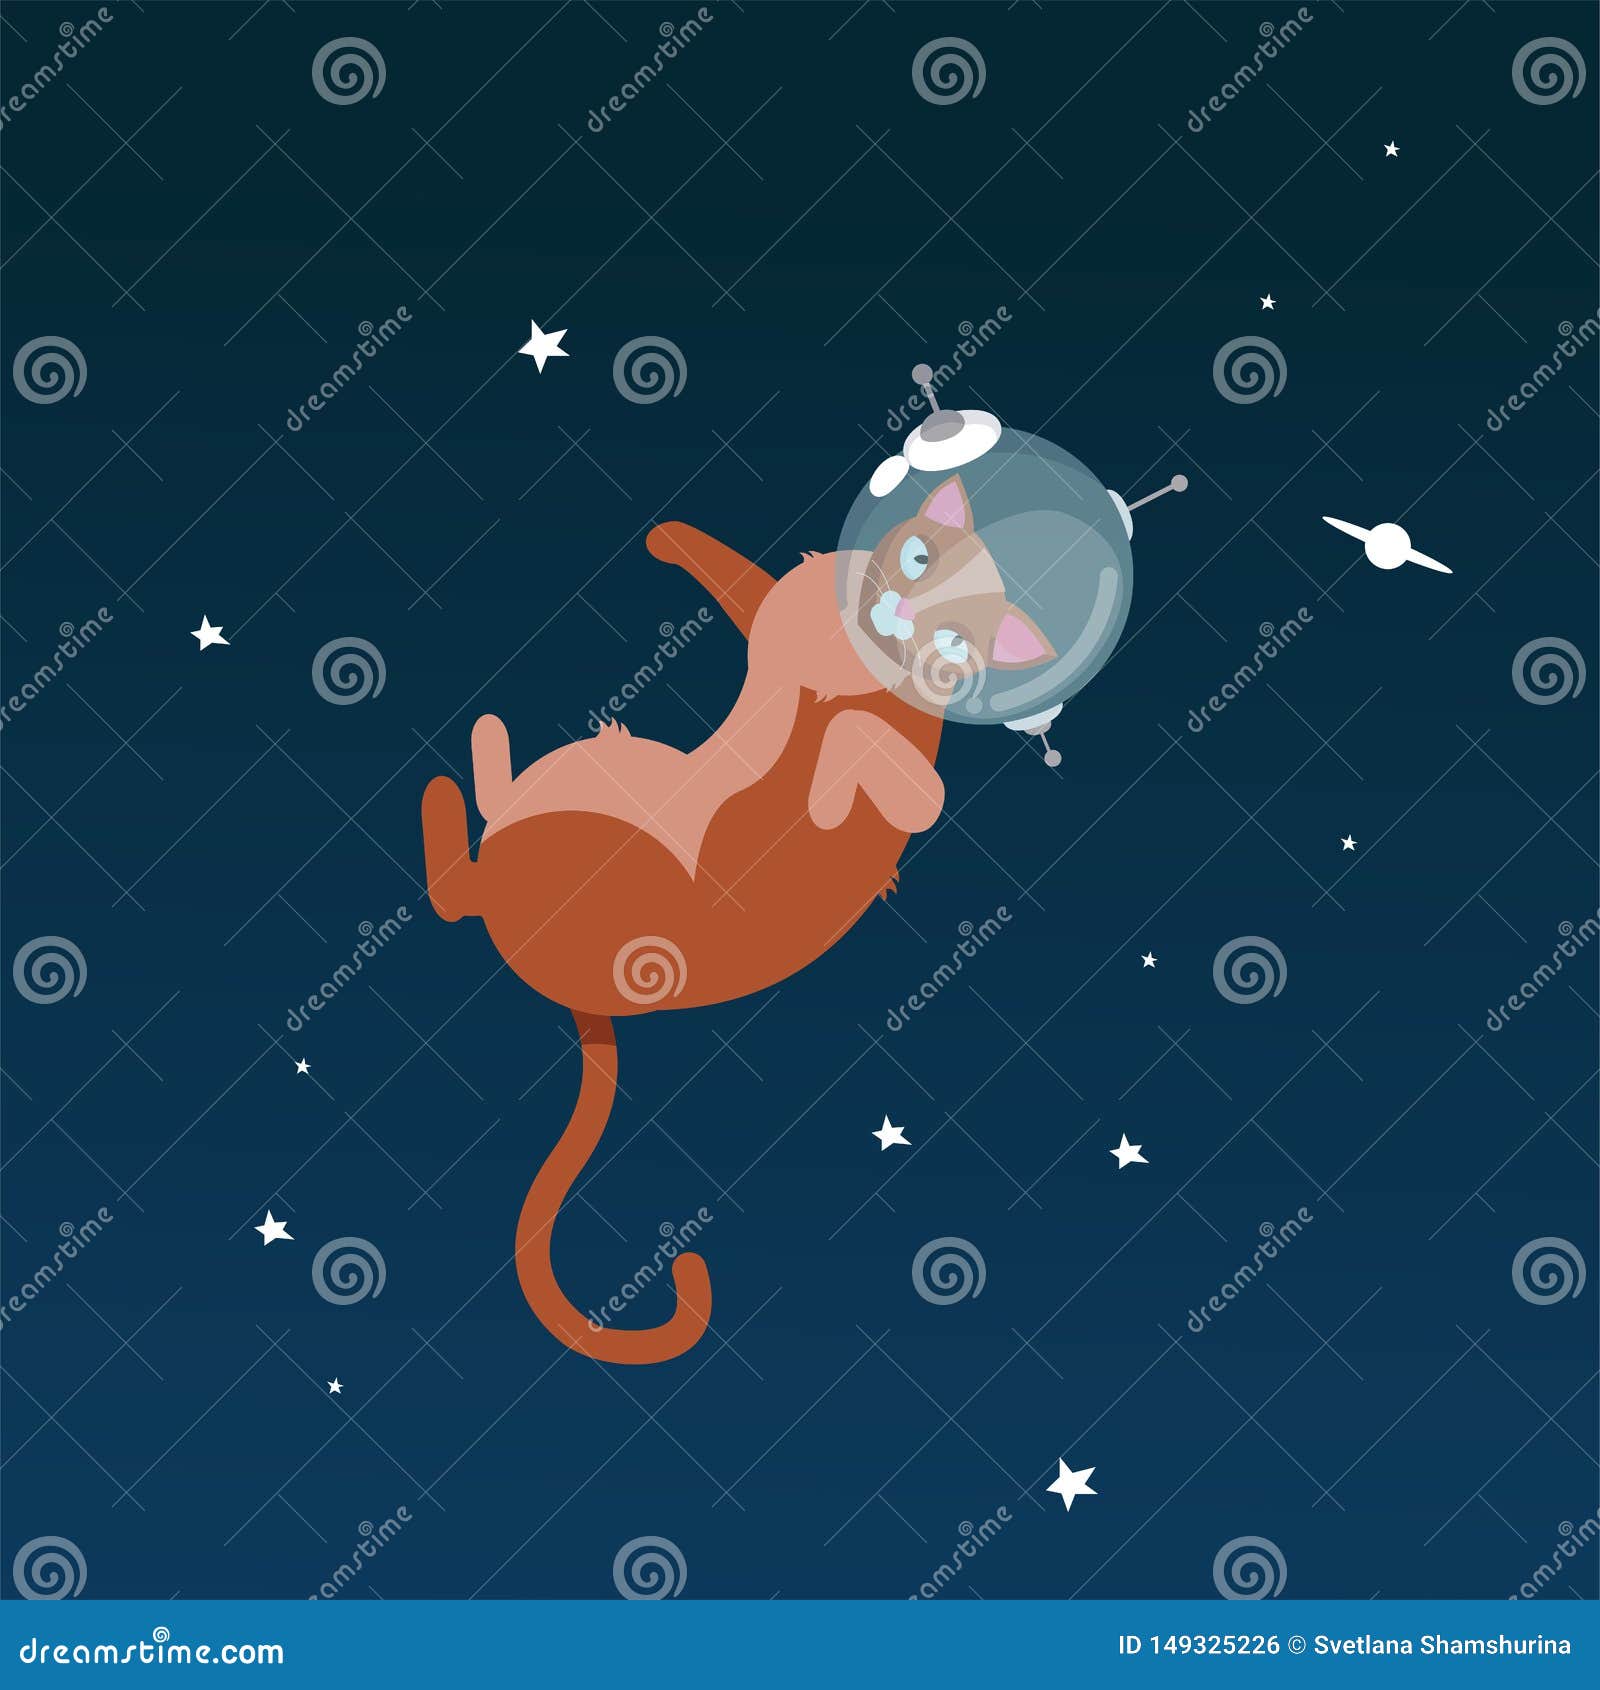 30 多张免费的“猫猫猫宇航员”和“宇航员”插图 - Pixabay